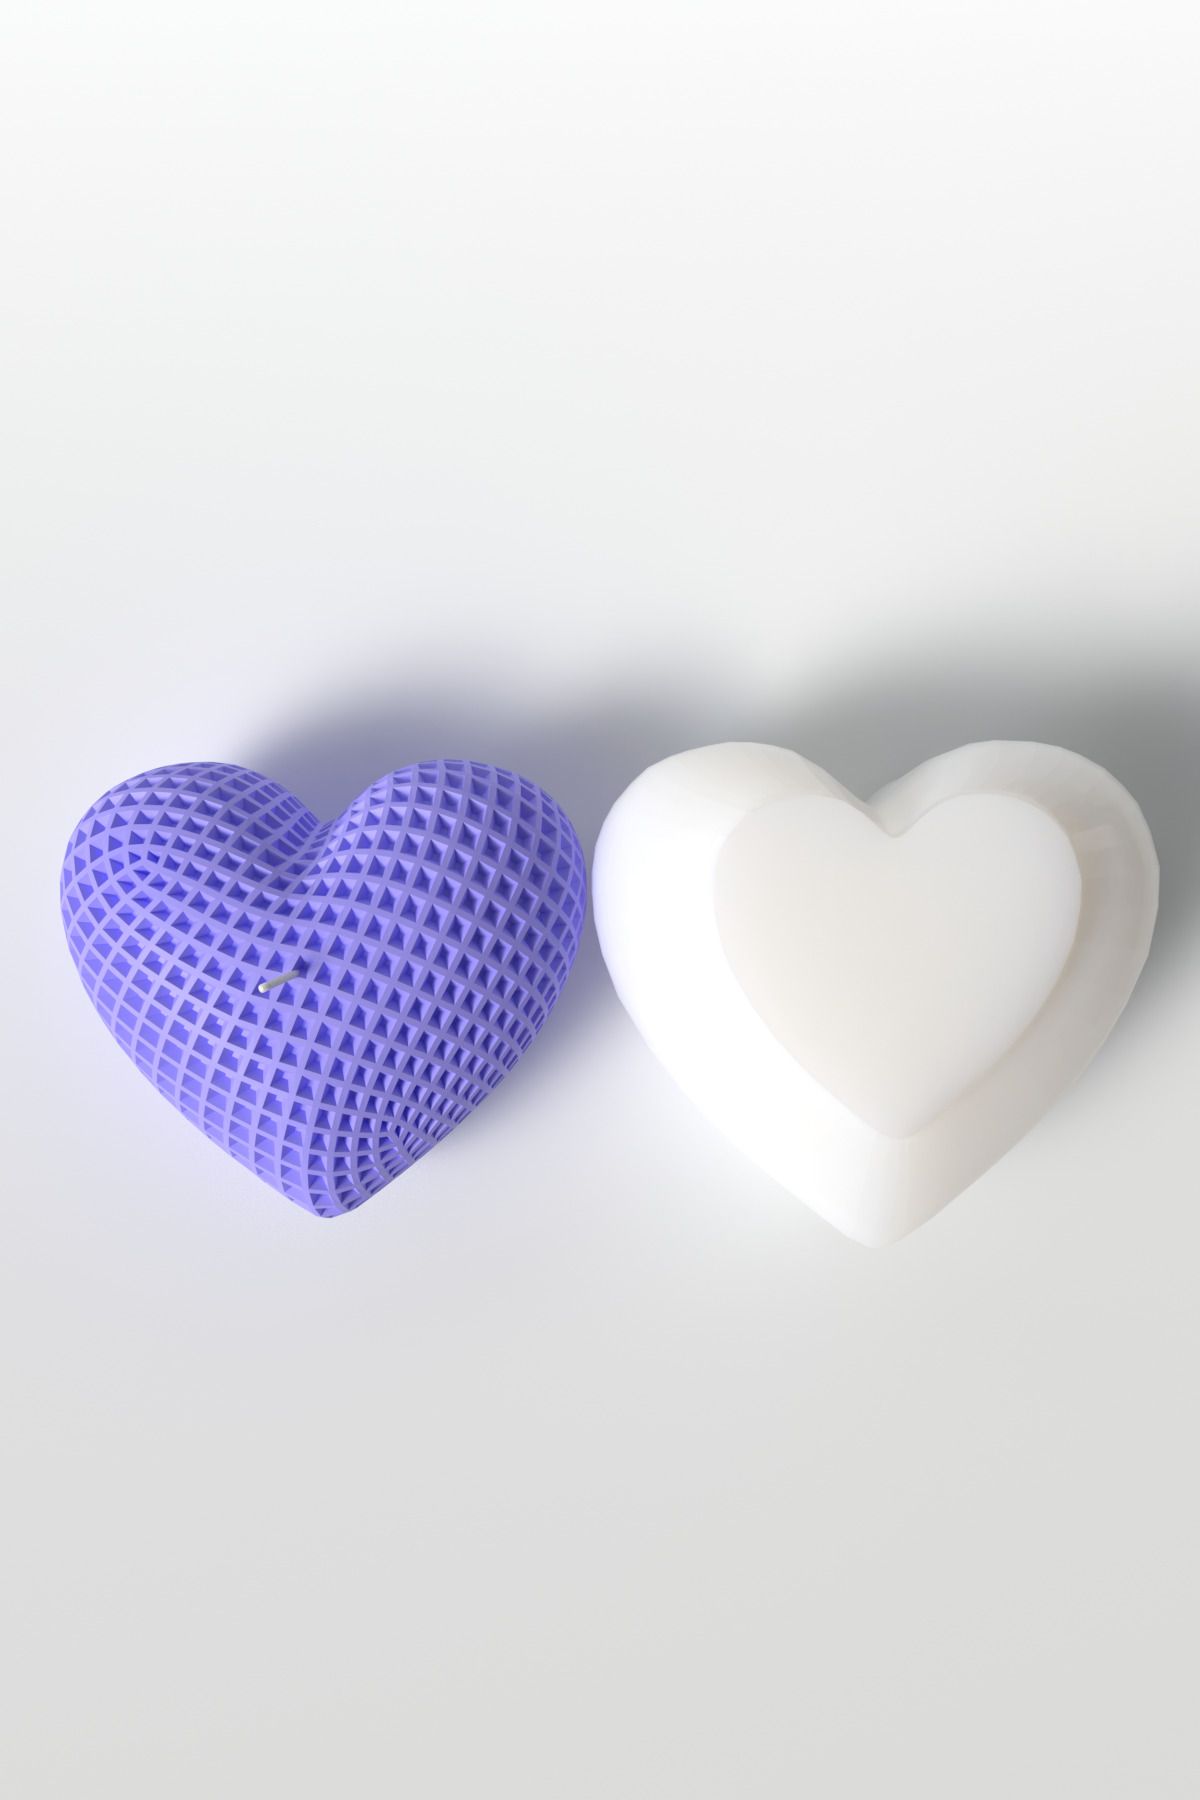 Cageartstudio Büyük Desenli Kalp Mum Silikon Kalıp - Sevgililer Günü Mum Kalıbı Soya Wax Mum Yapım Malzemeleri